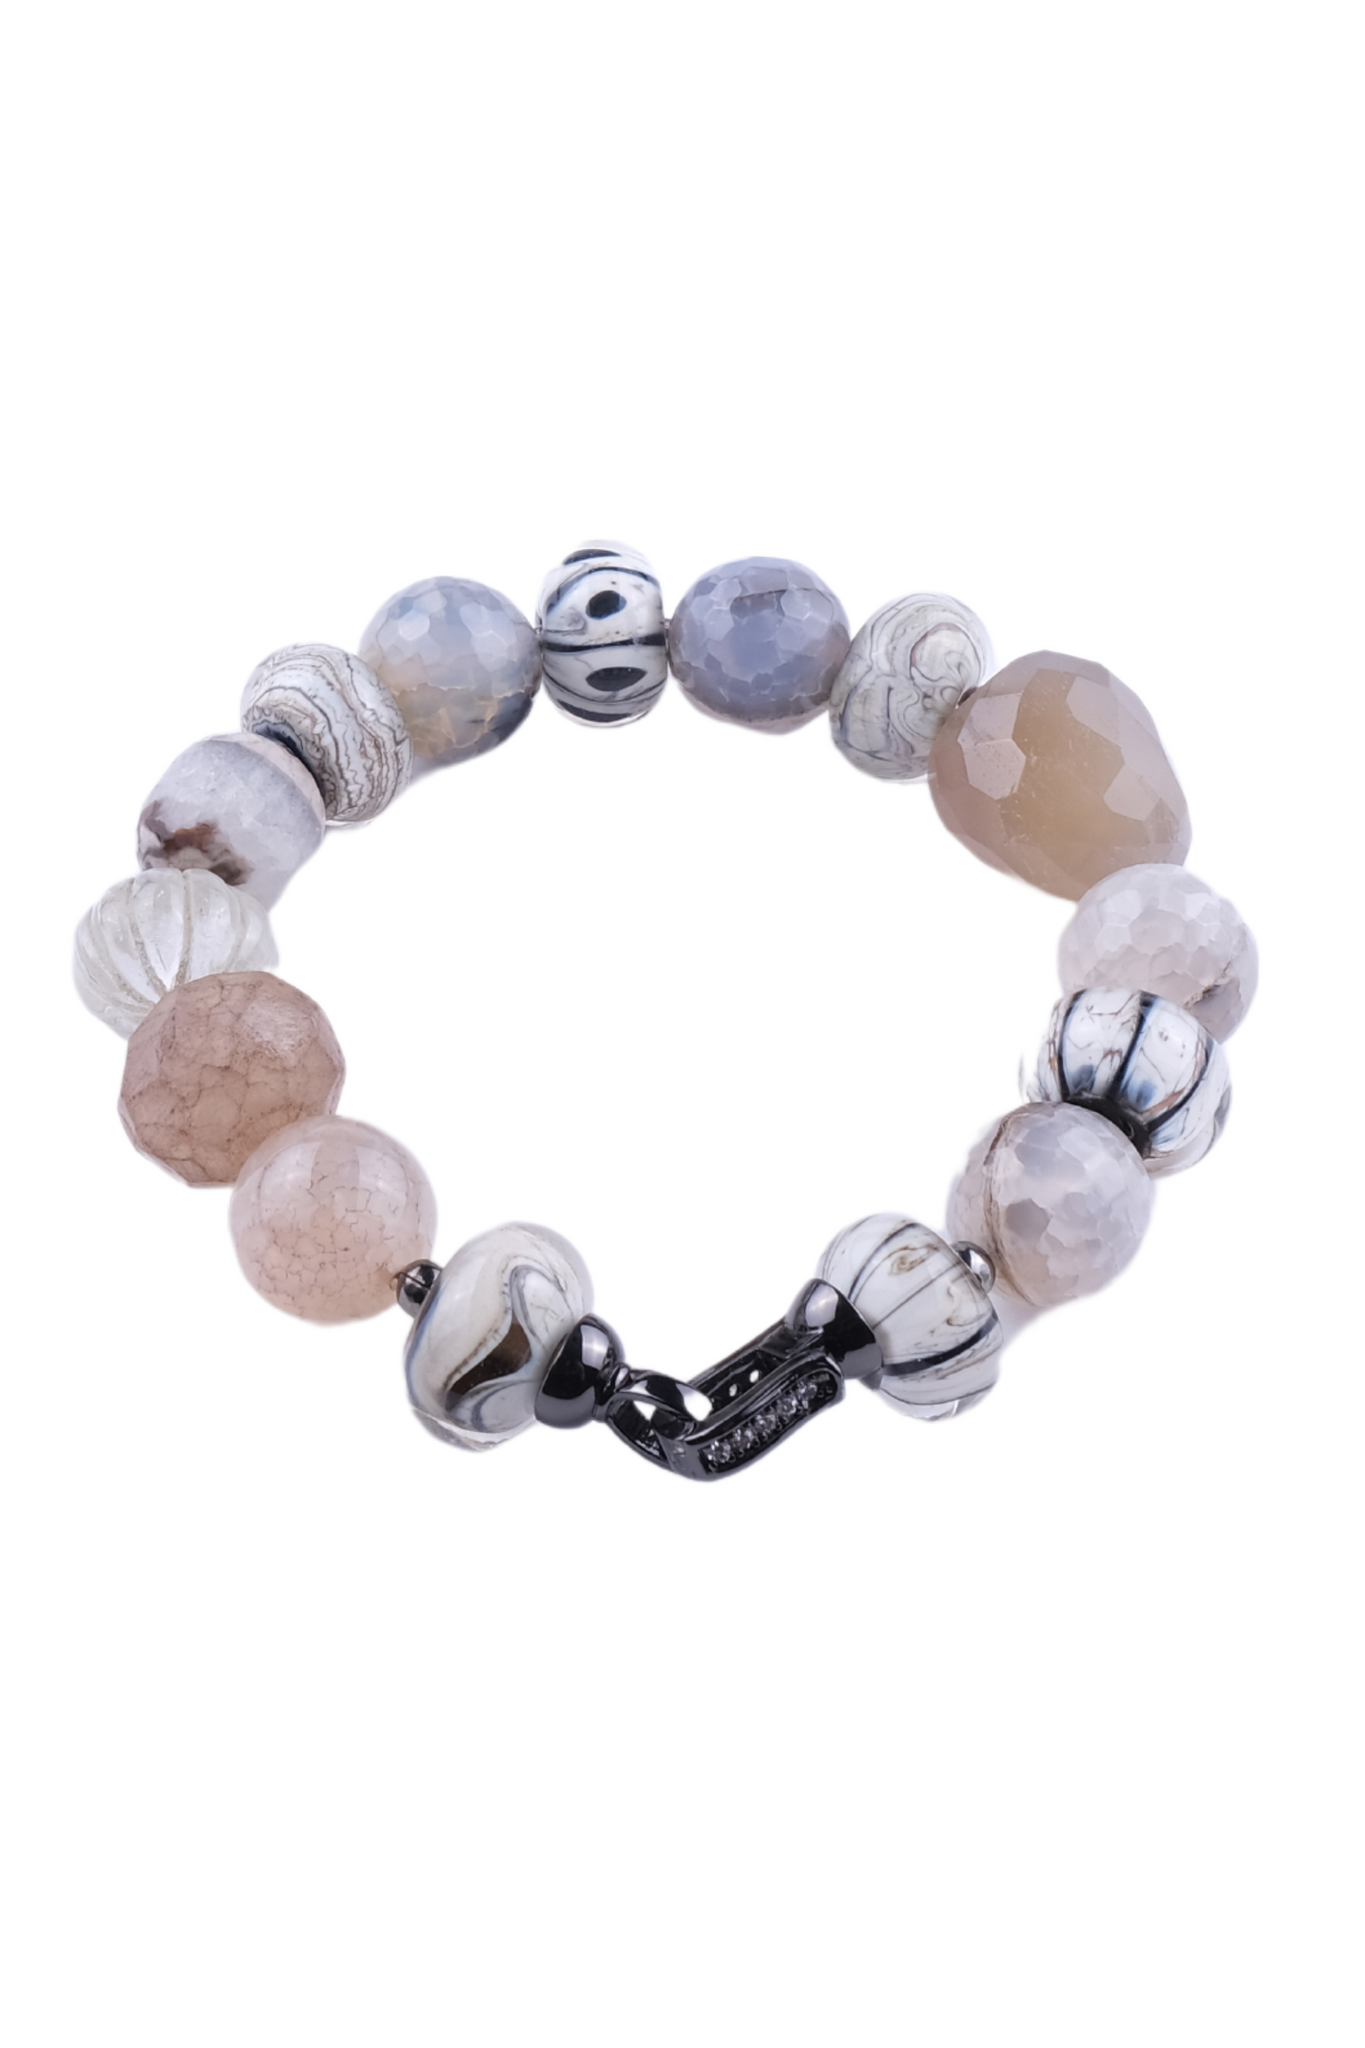 Billede af Unika armbånd - agat, månesten, flourite, håndlavede glas perler i natur grå og mat brune farver